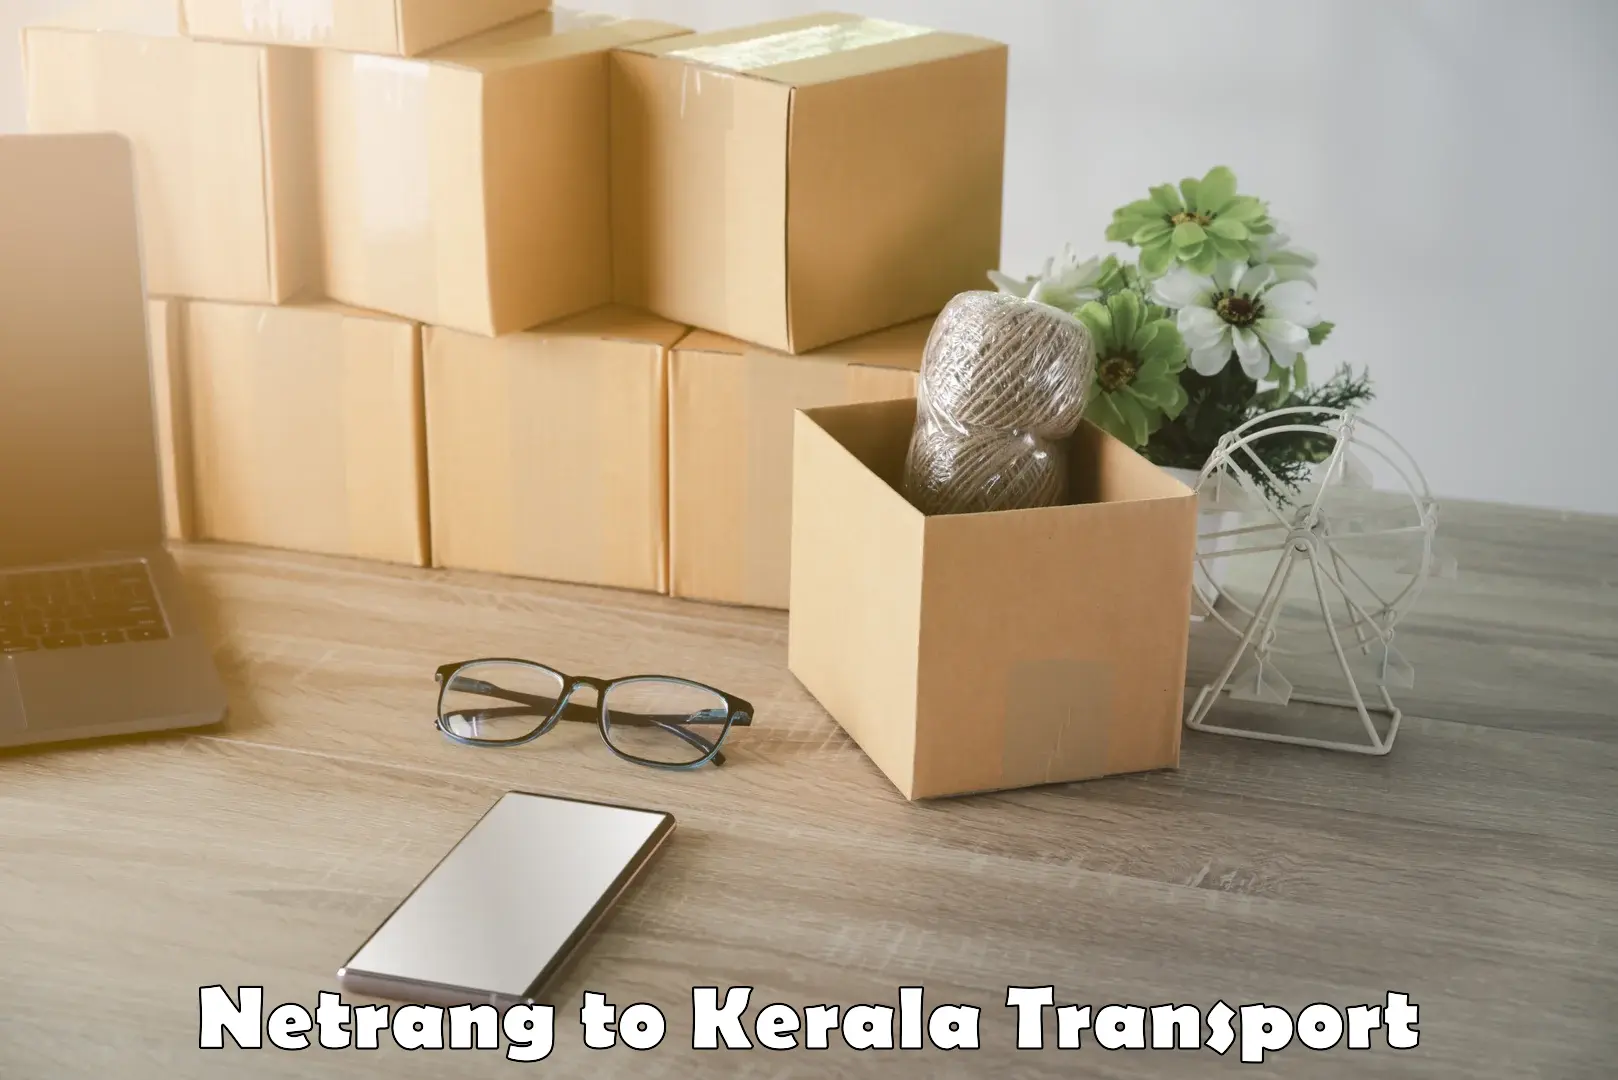 Daily transport service Netrang to Kattappana